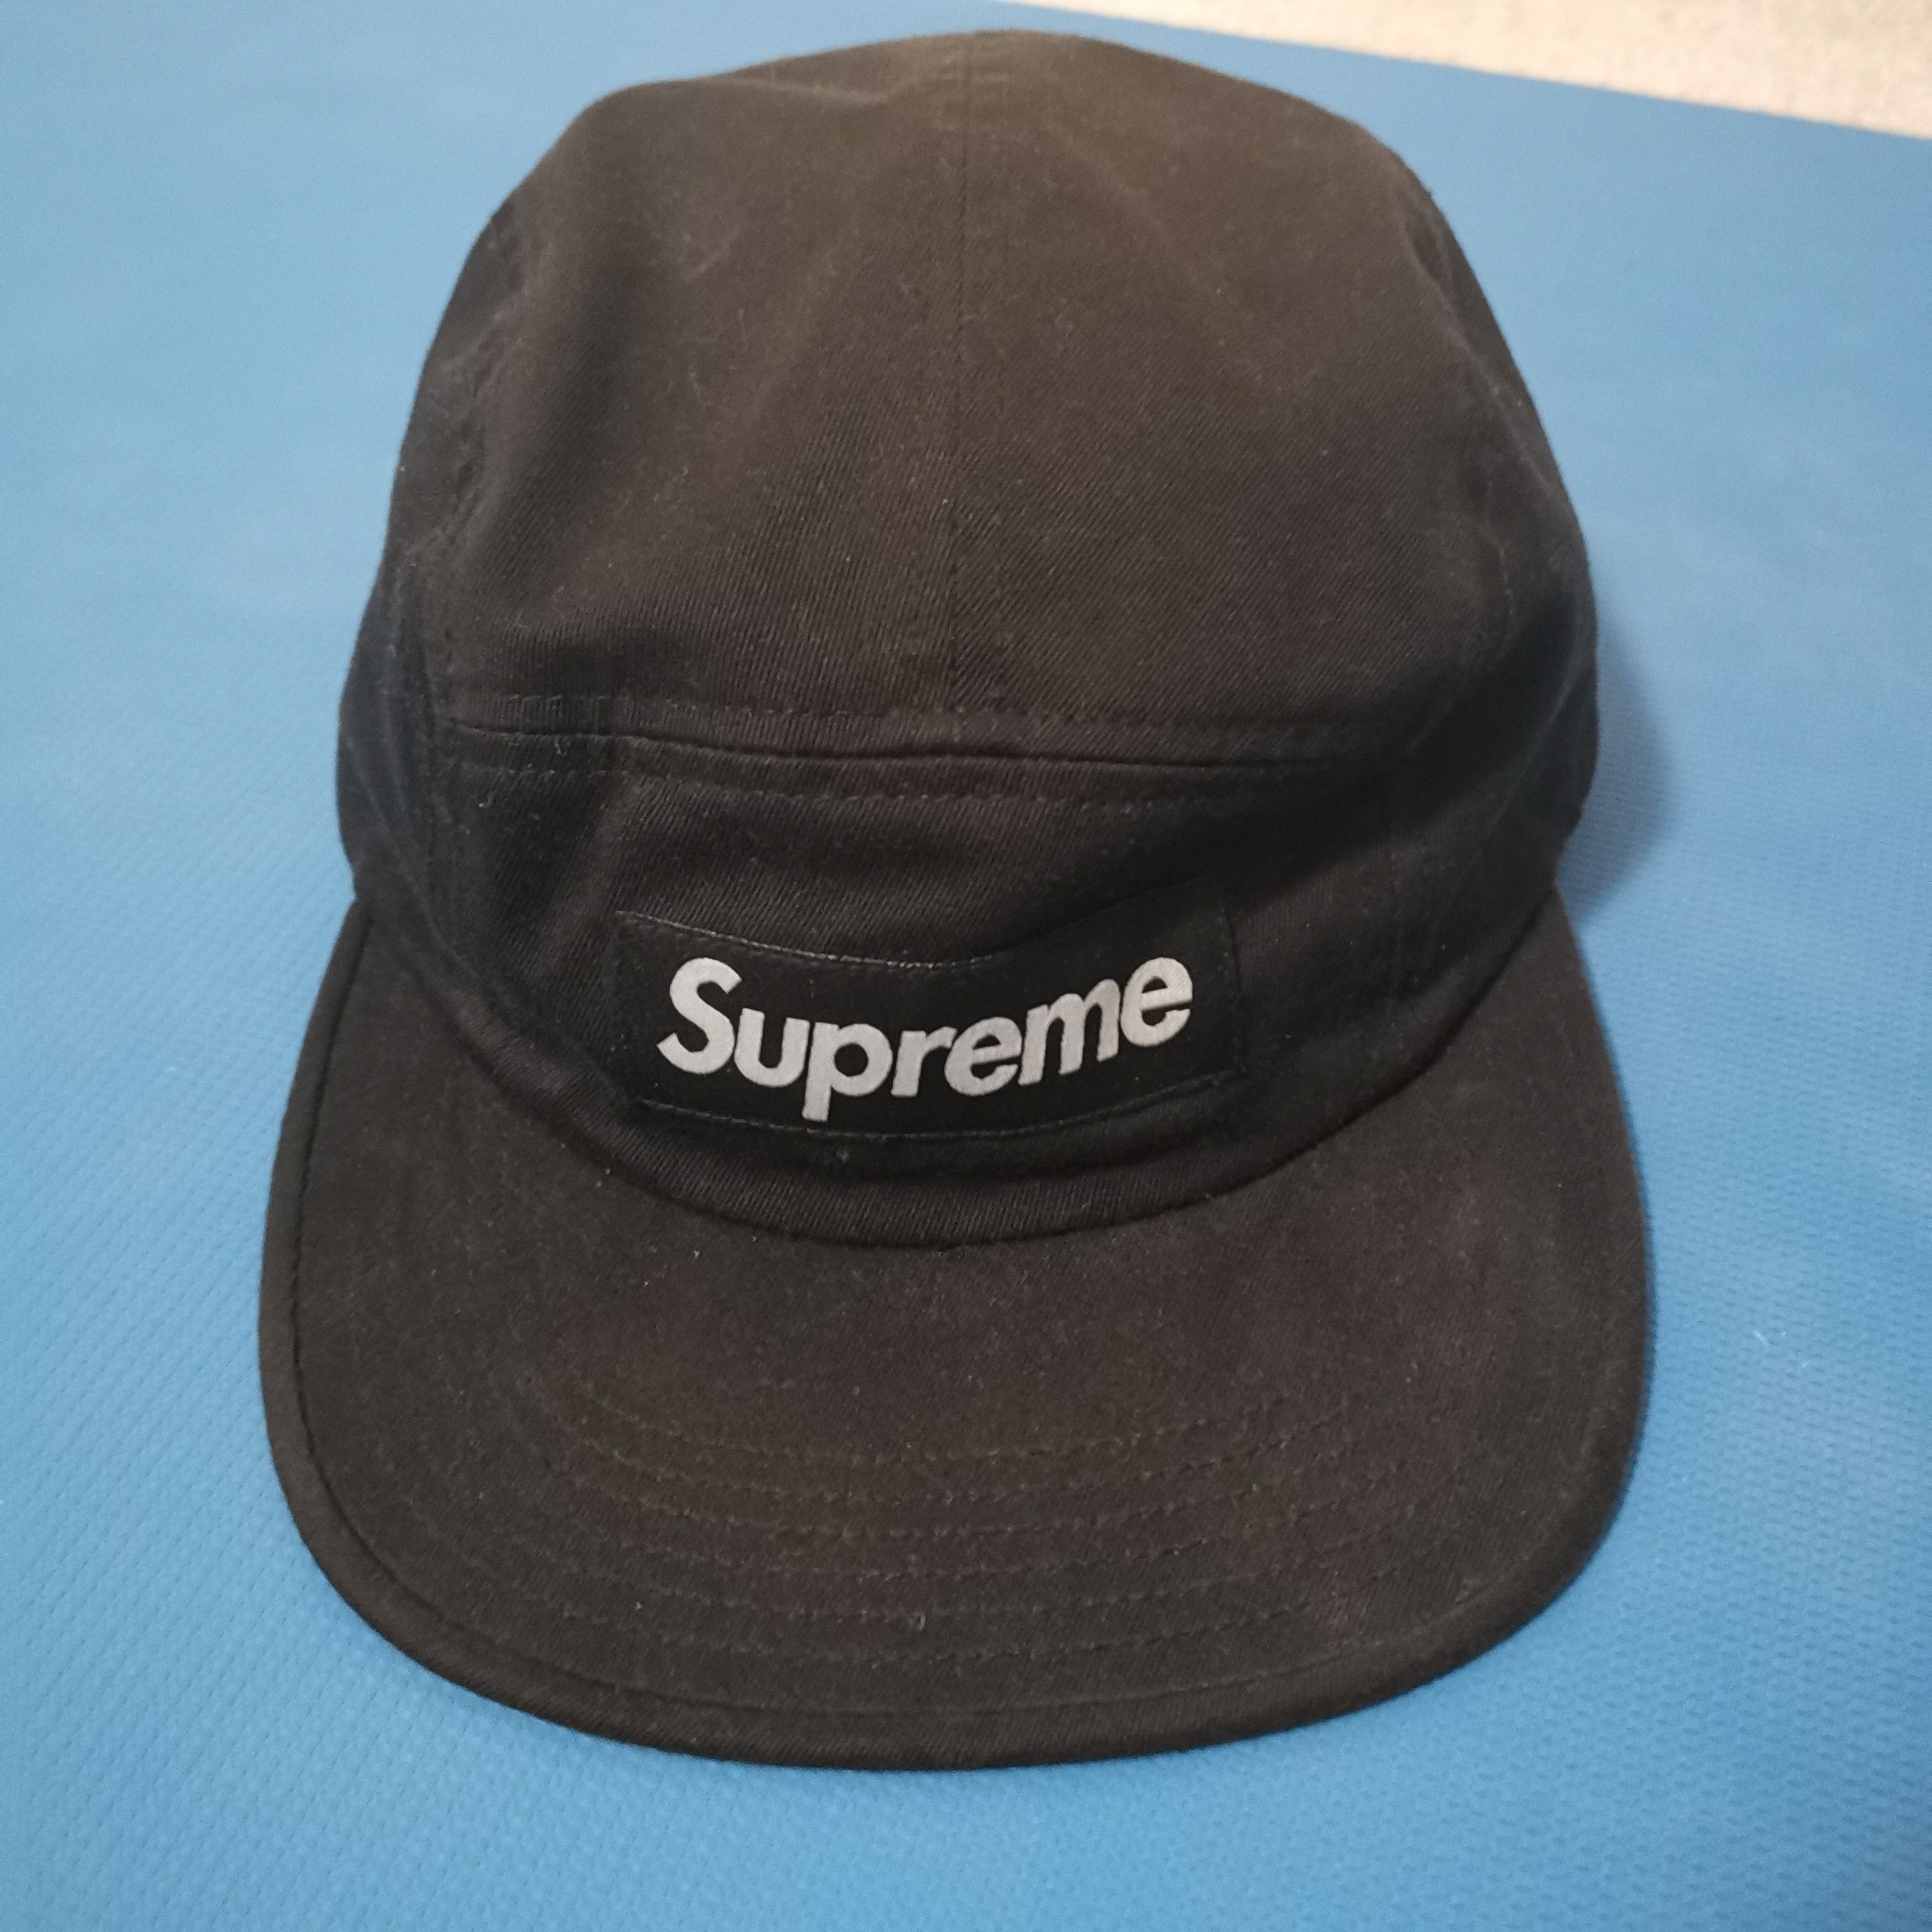 Supreme Supreme black cap | Grailed